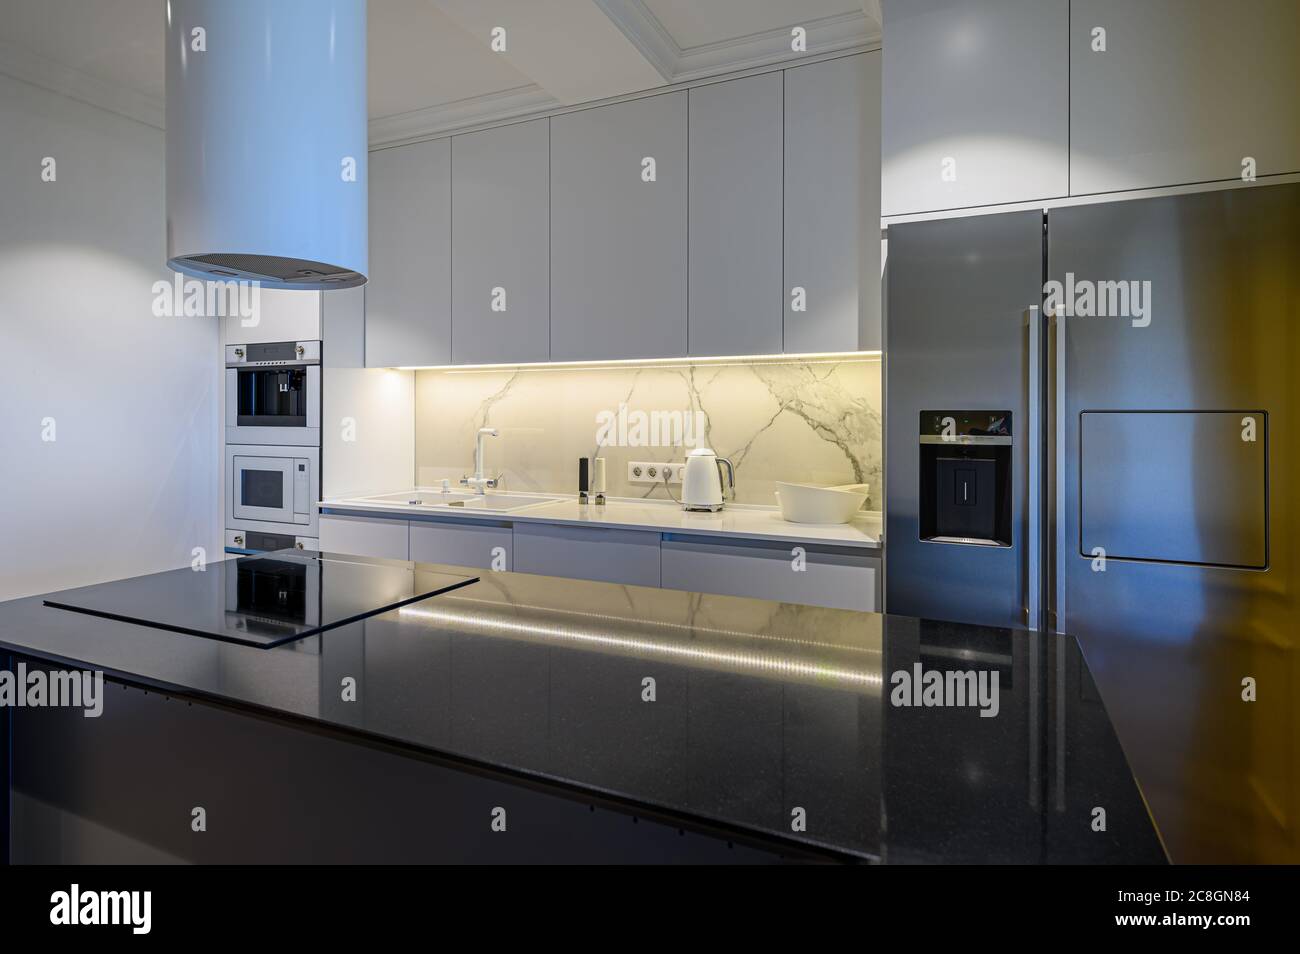 Cocina de lujo Interior con diseño minimalista Foto de stock